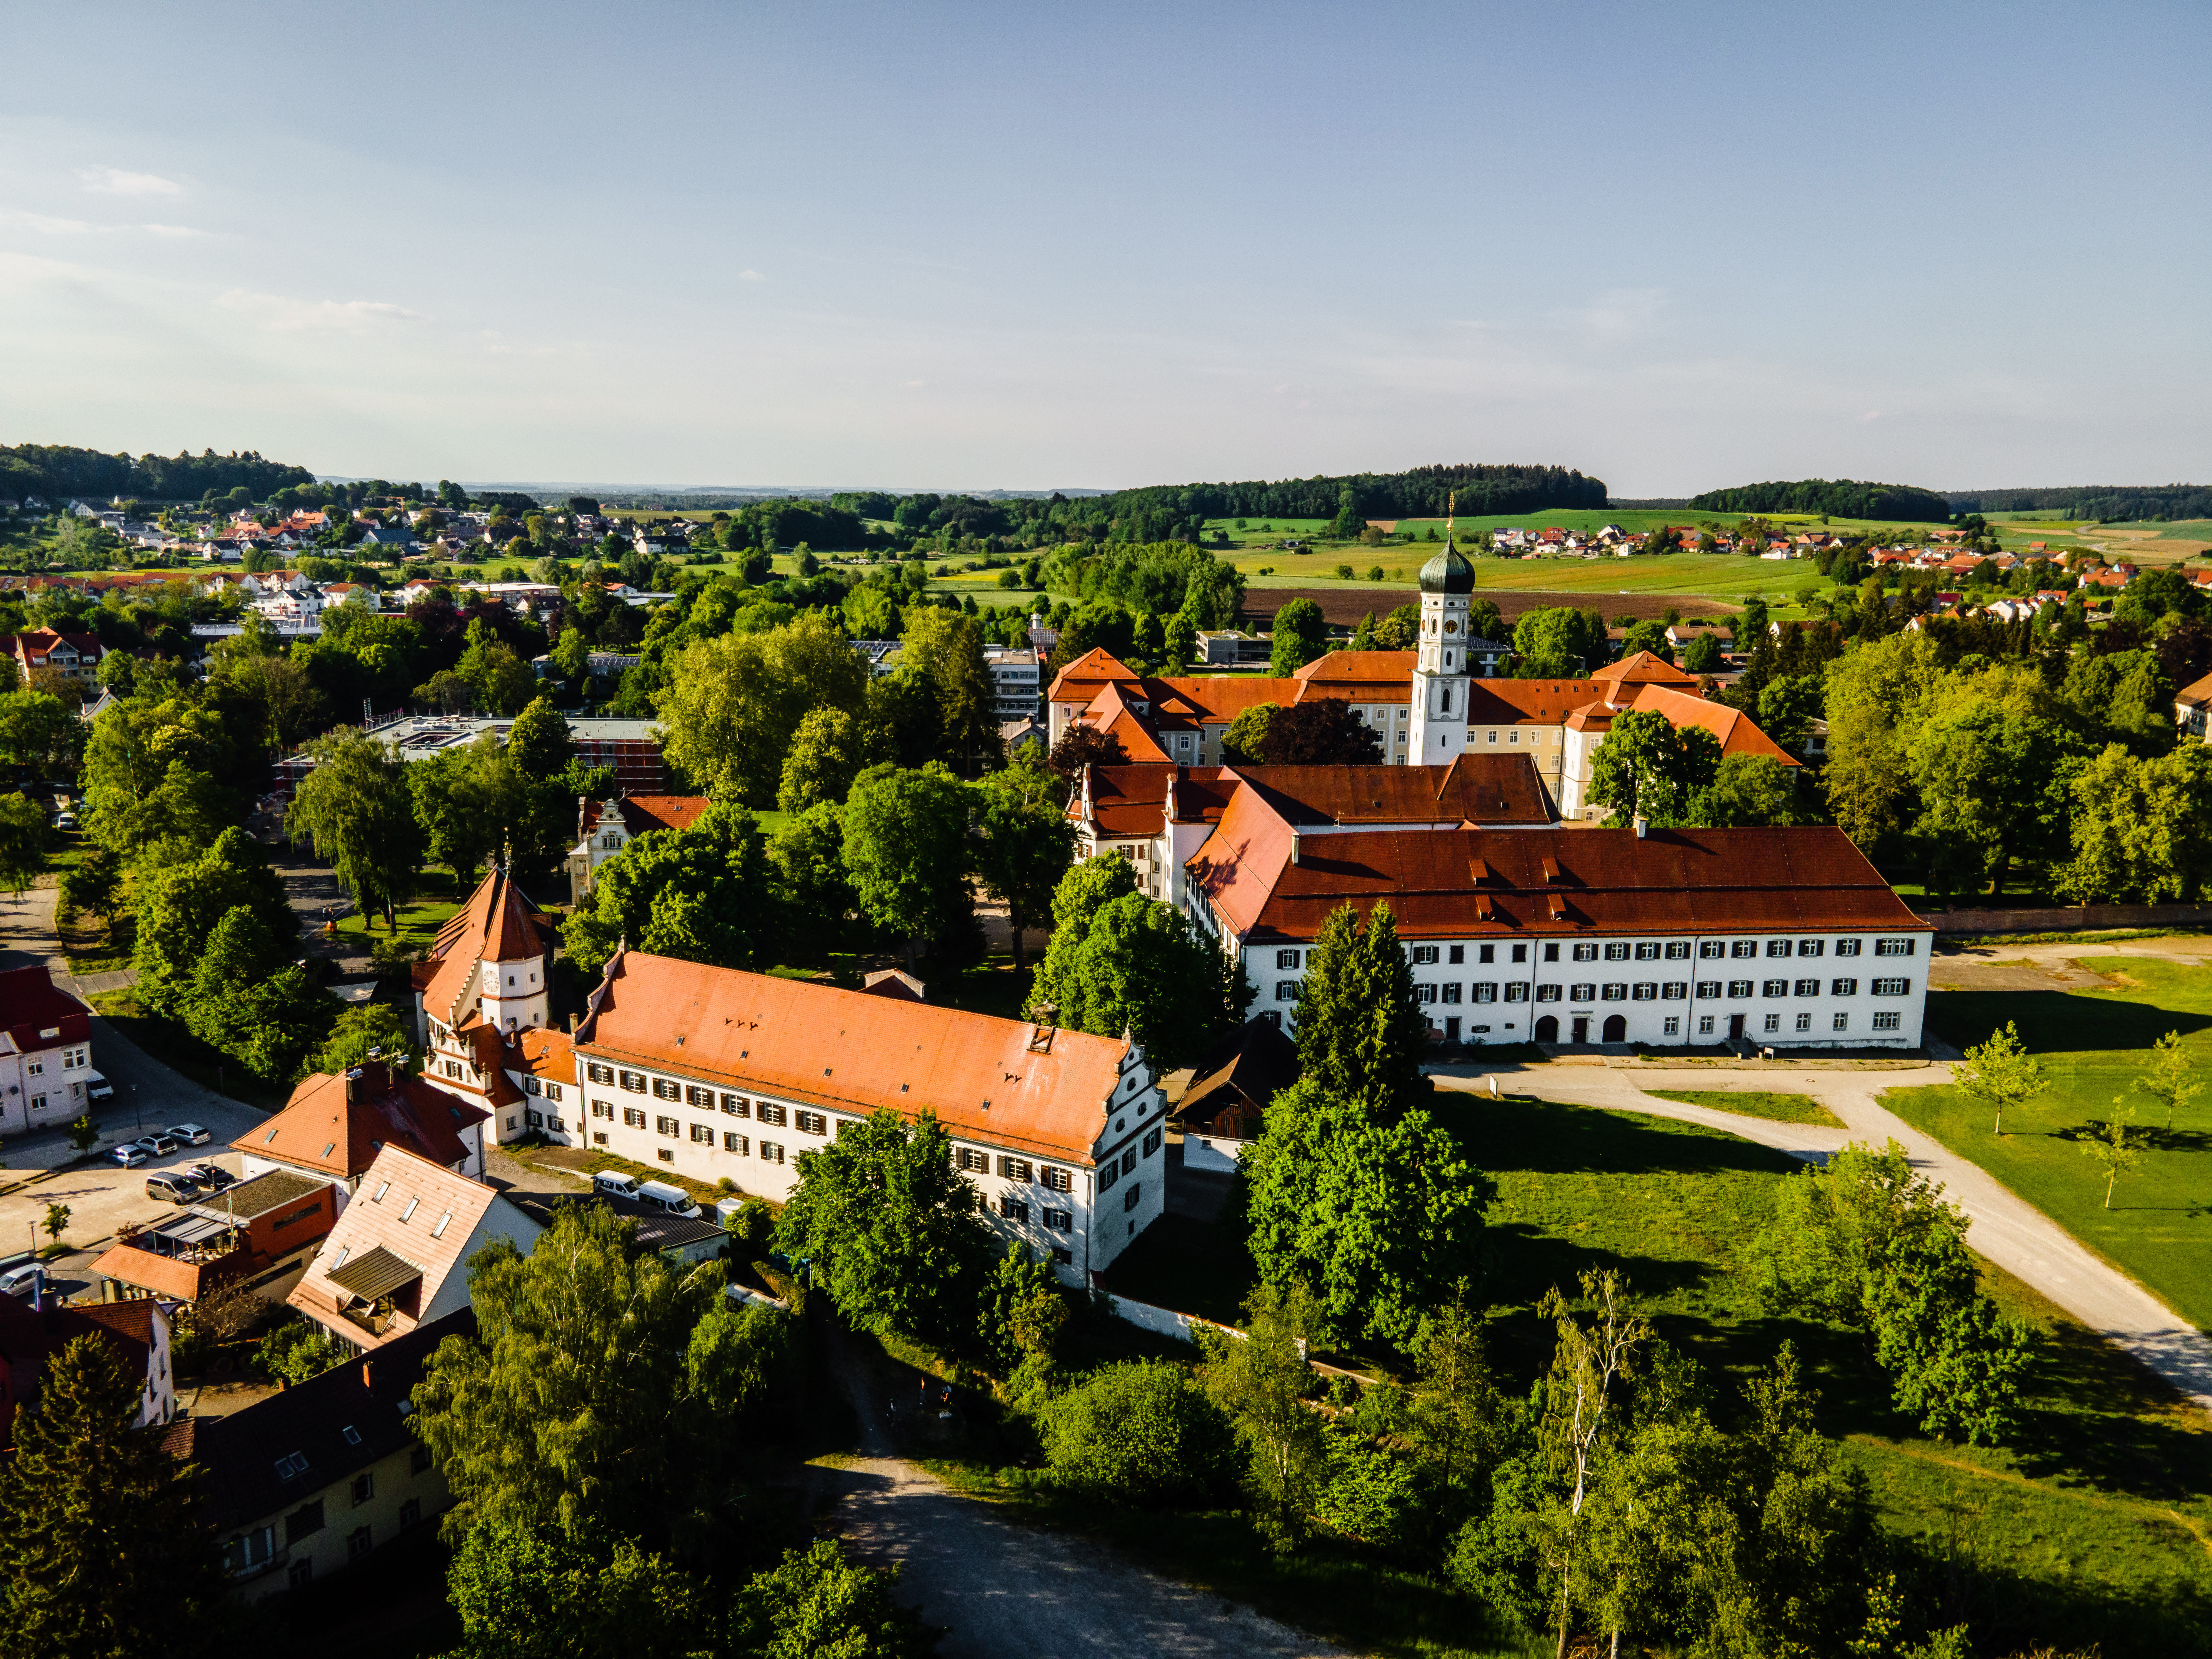 Schussenried Monastery